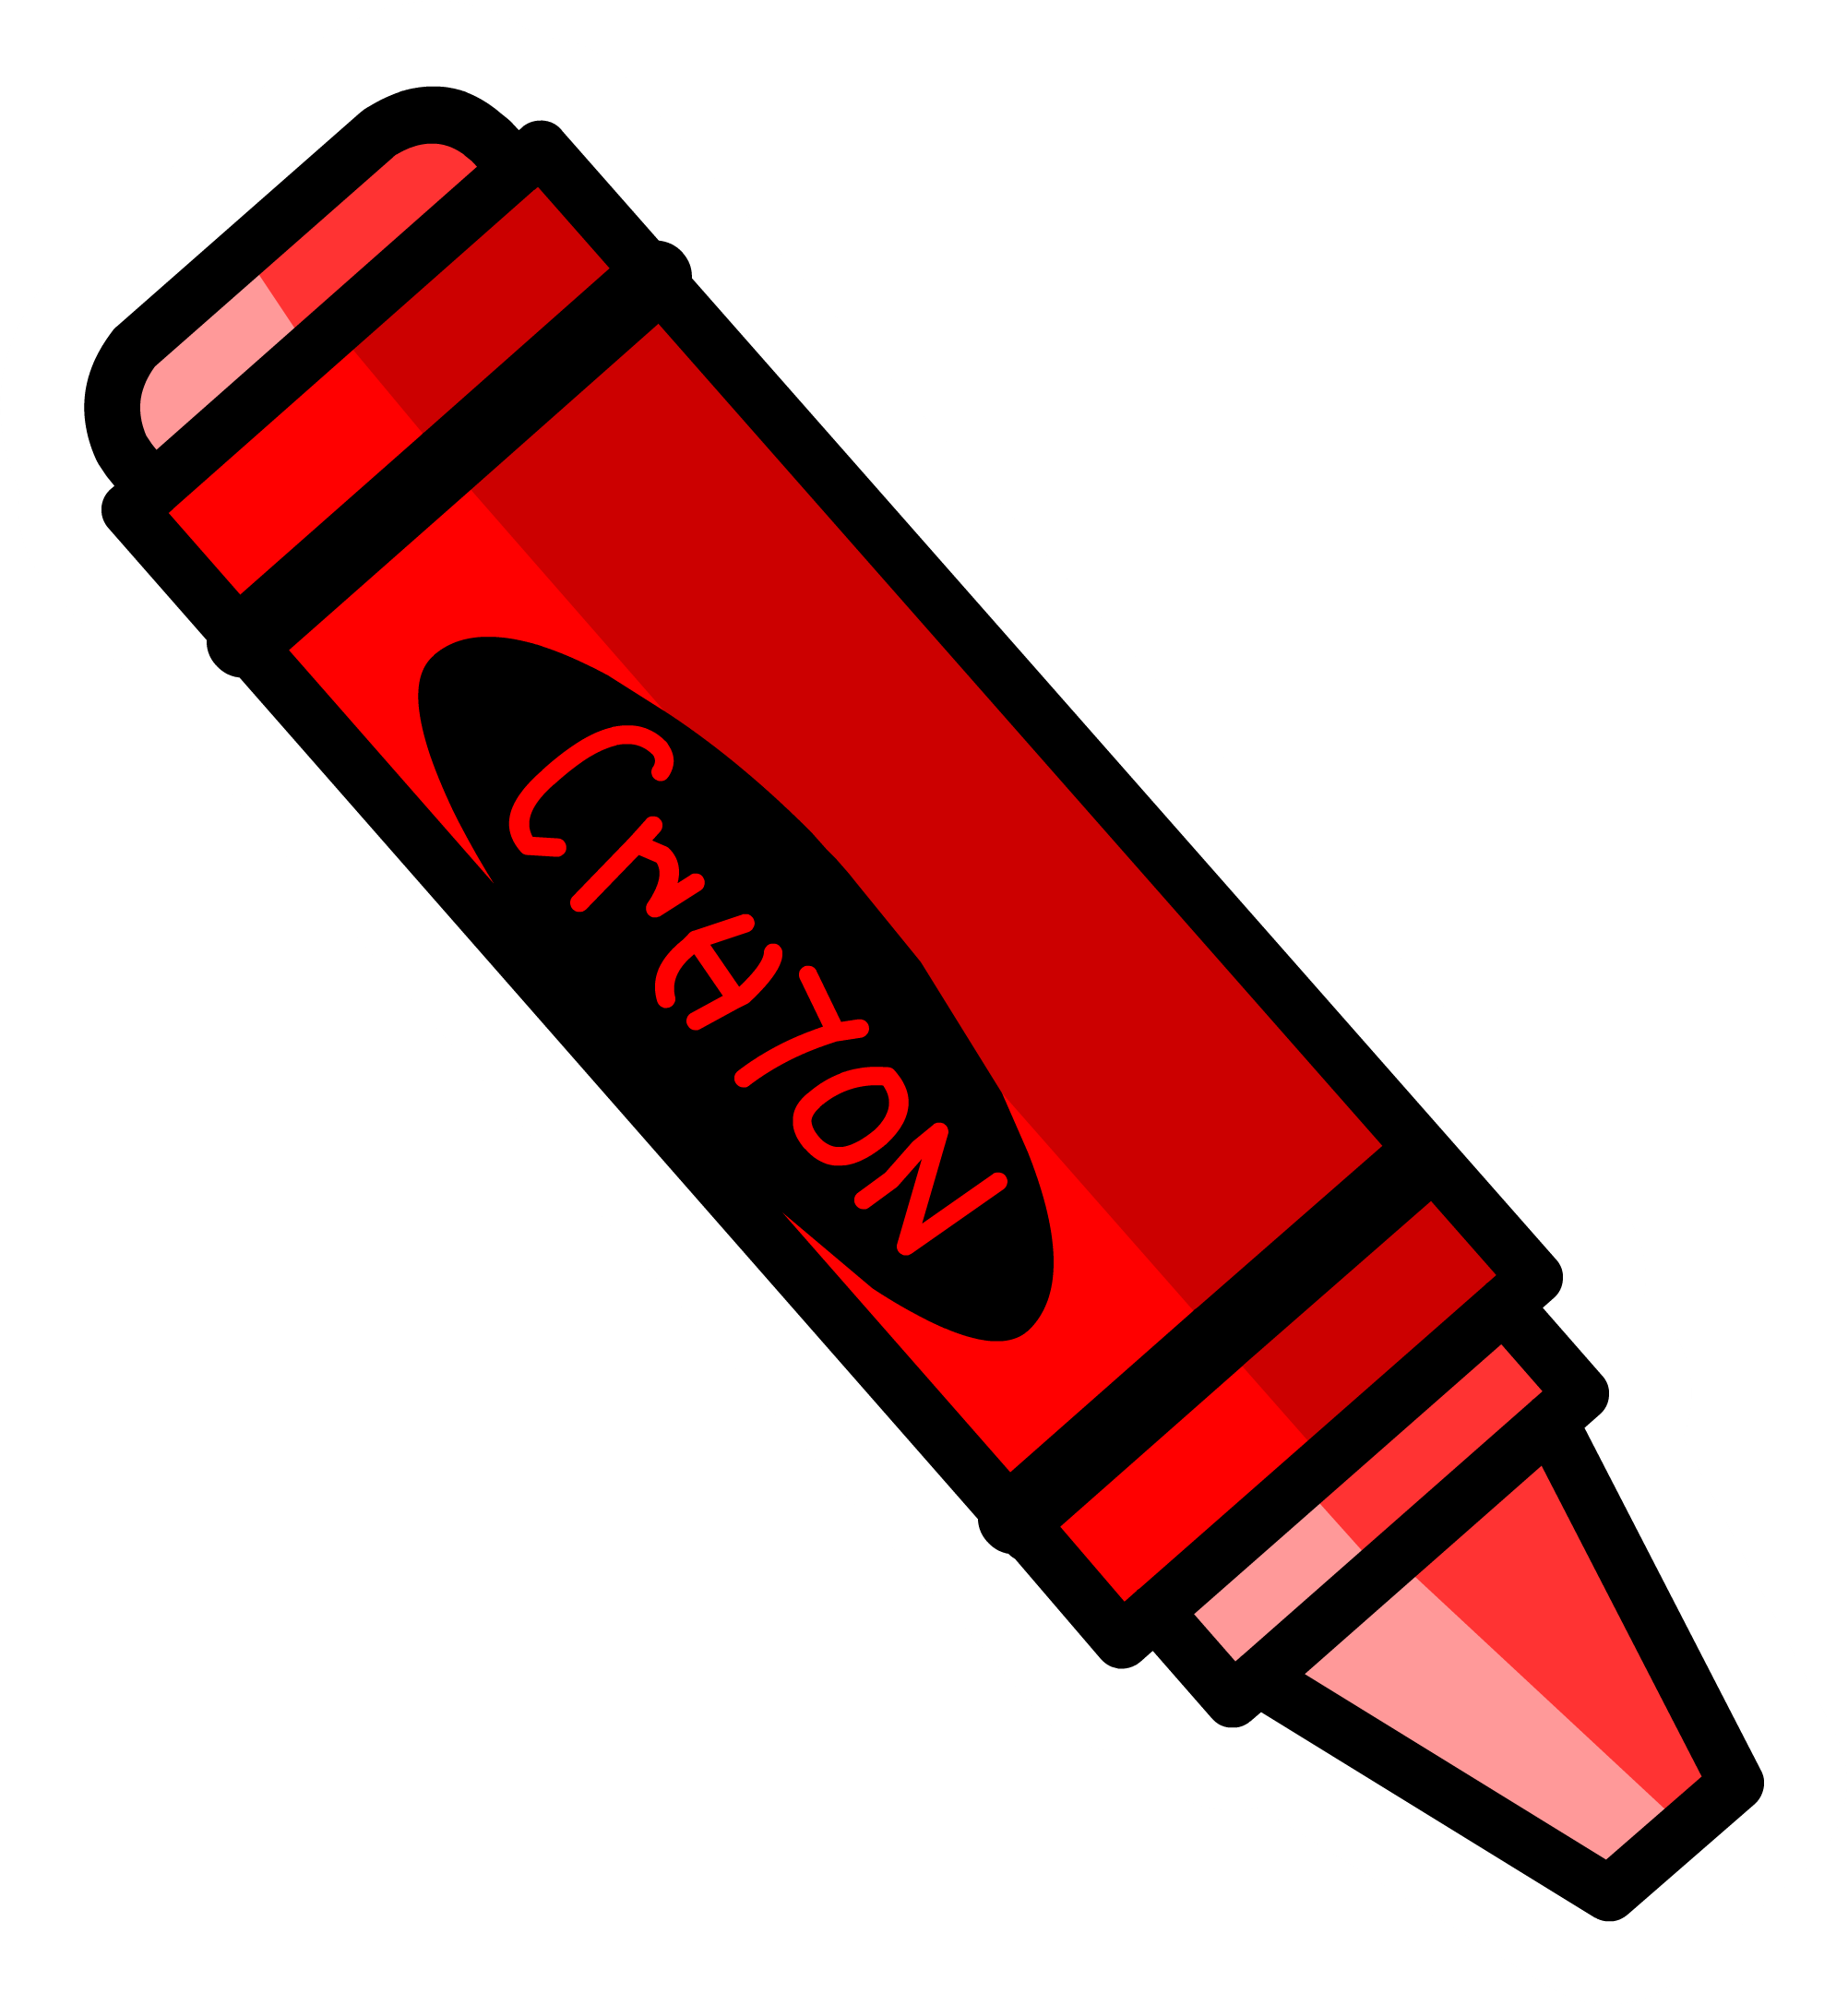 Crayons clipart purple crayon. Red jokingart com download